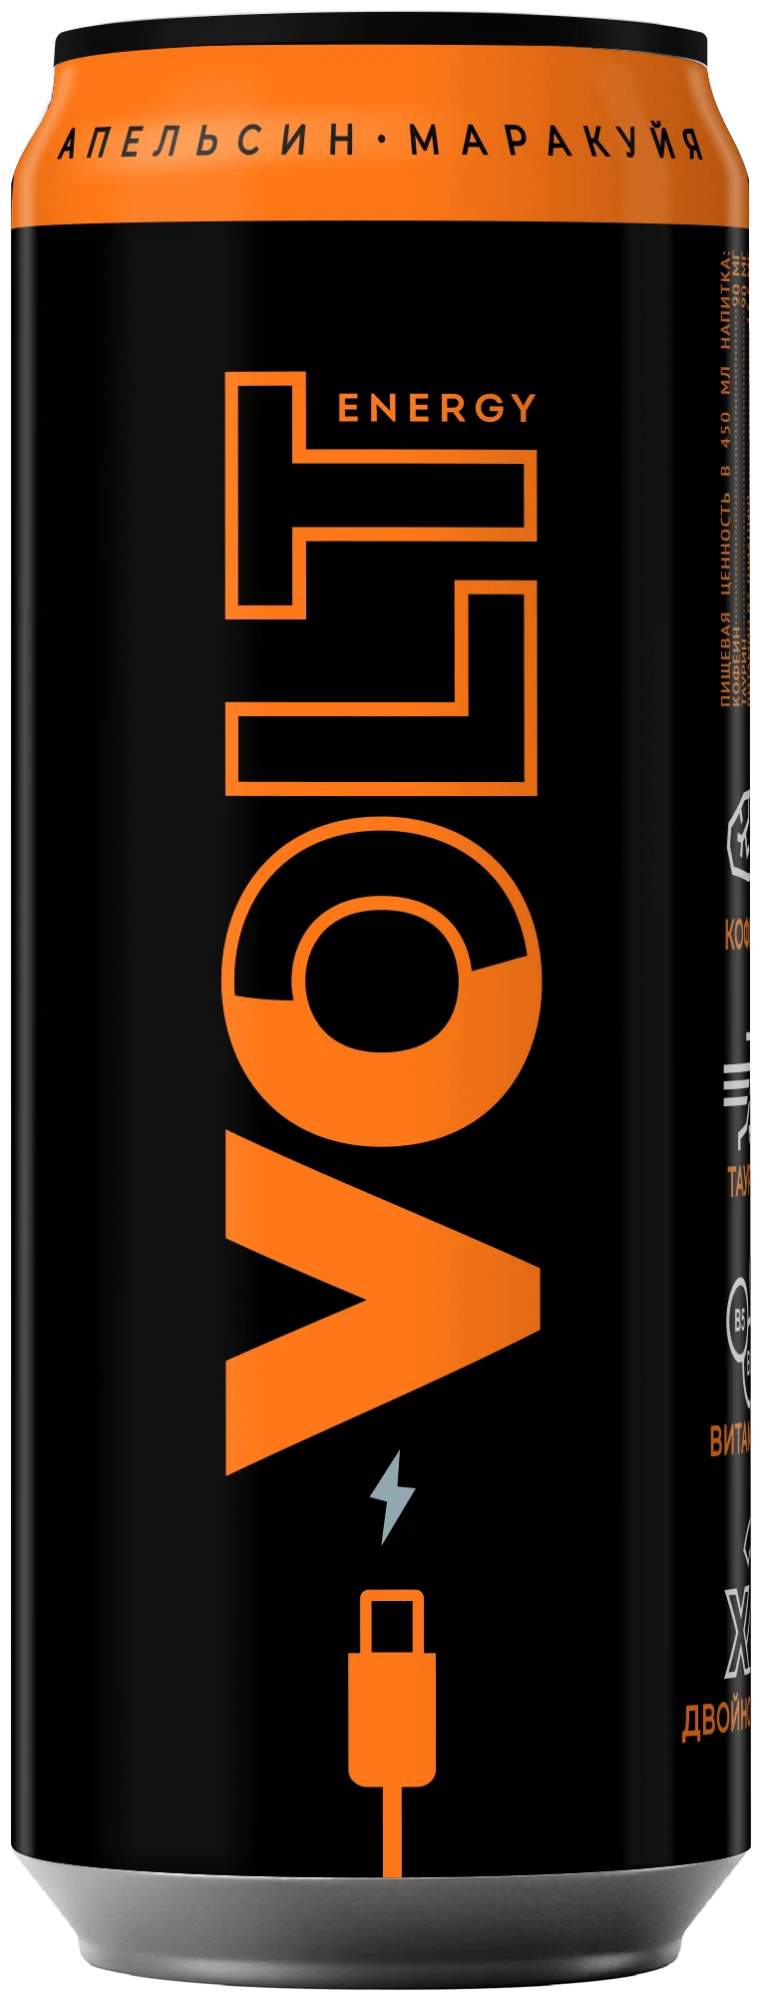 Напиток энергетический Volt Energy апельсин и маракуйя, 450 мл – купить в Москве, цены в интернет-магазинах на Мегамаркет